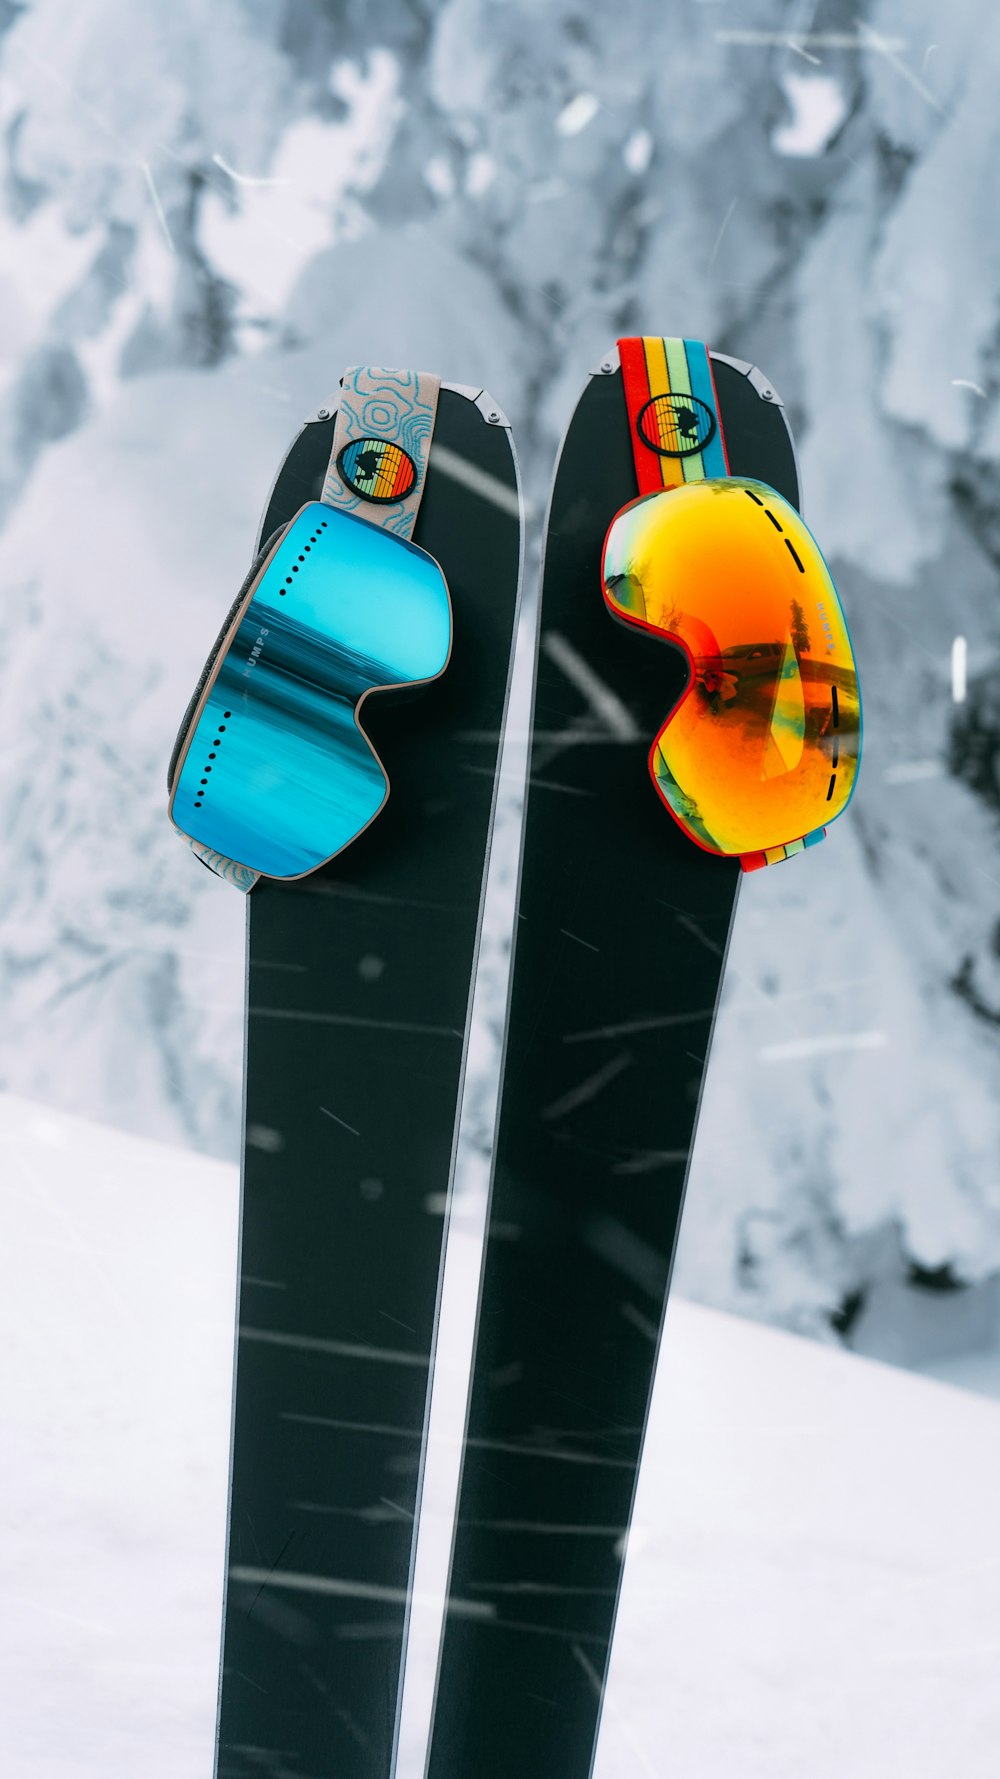 Tabla de snowboard roja y amarilla en suelo nevado